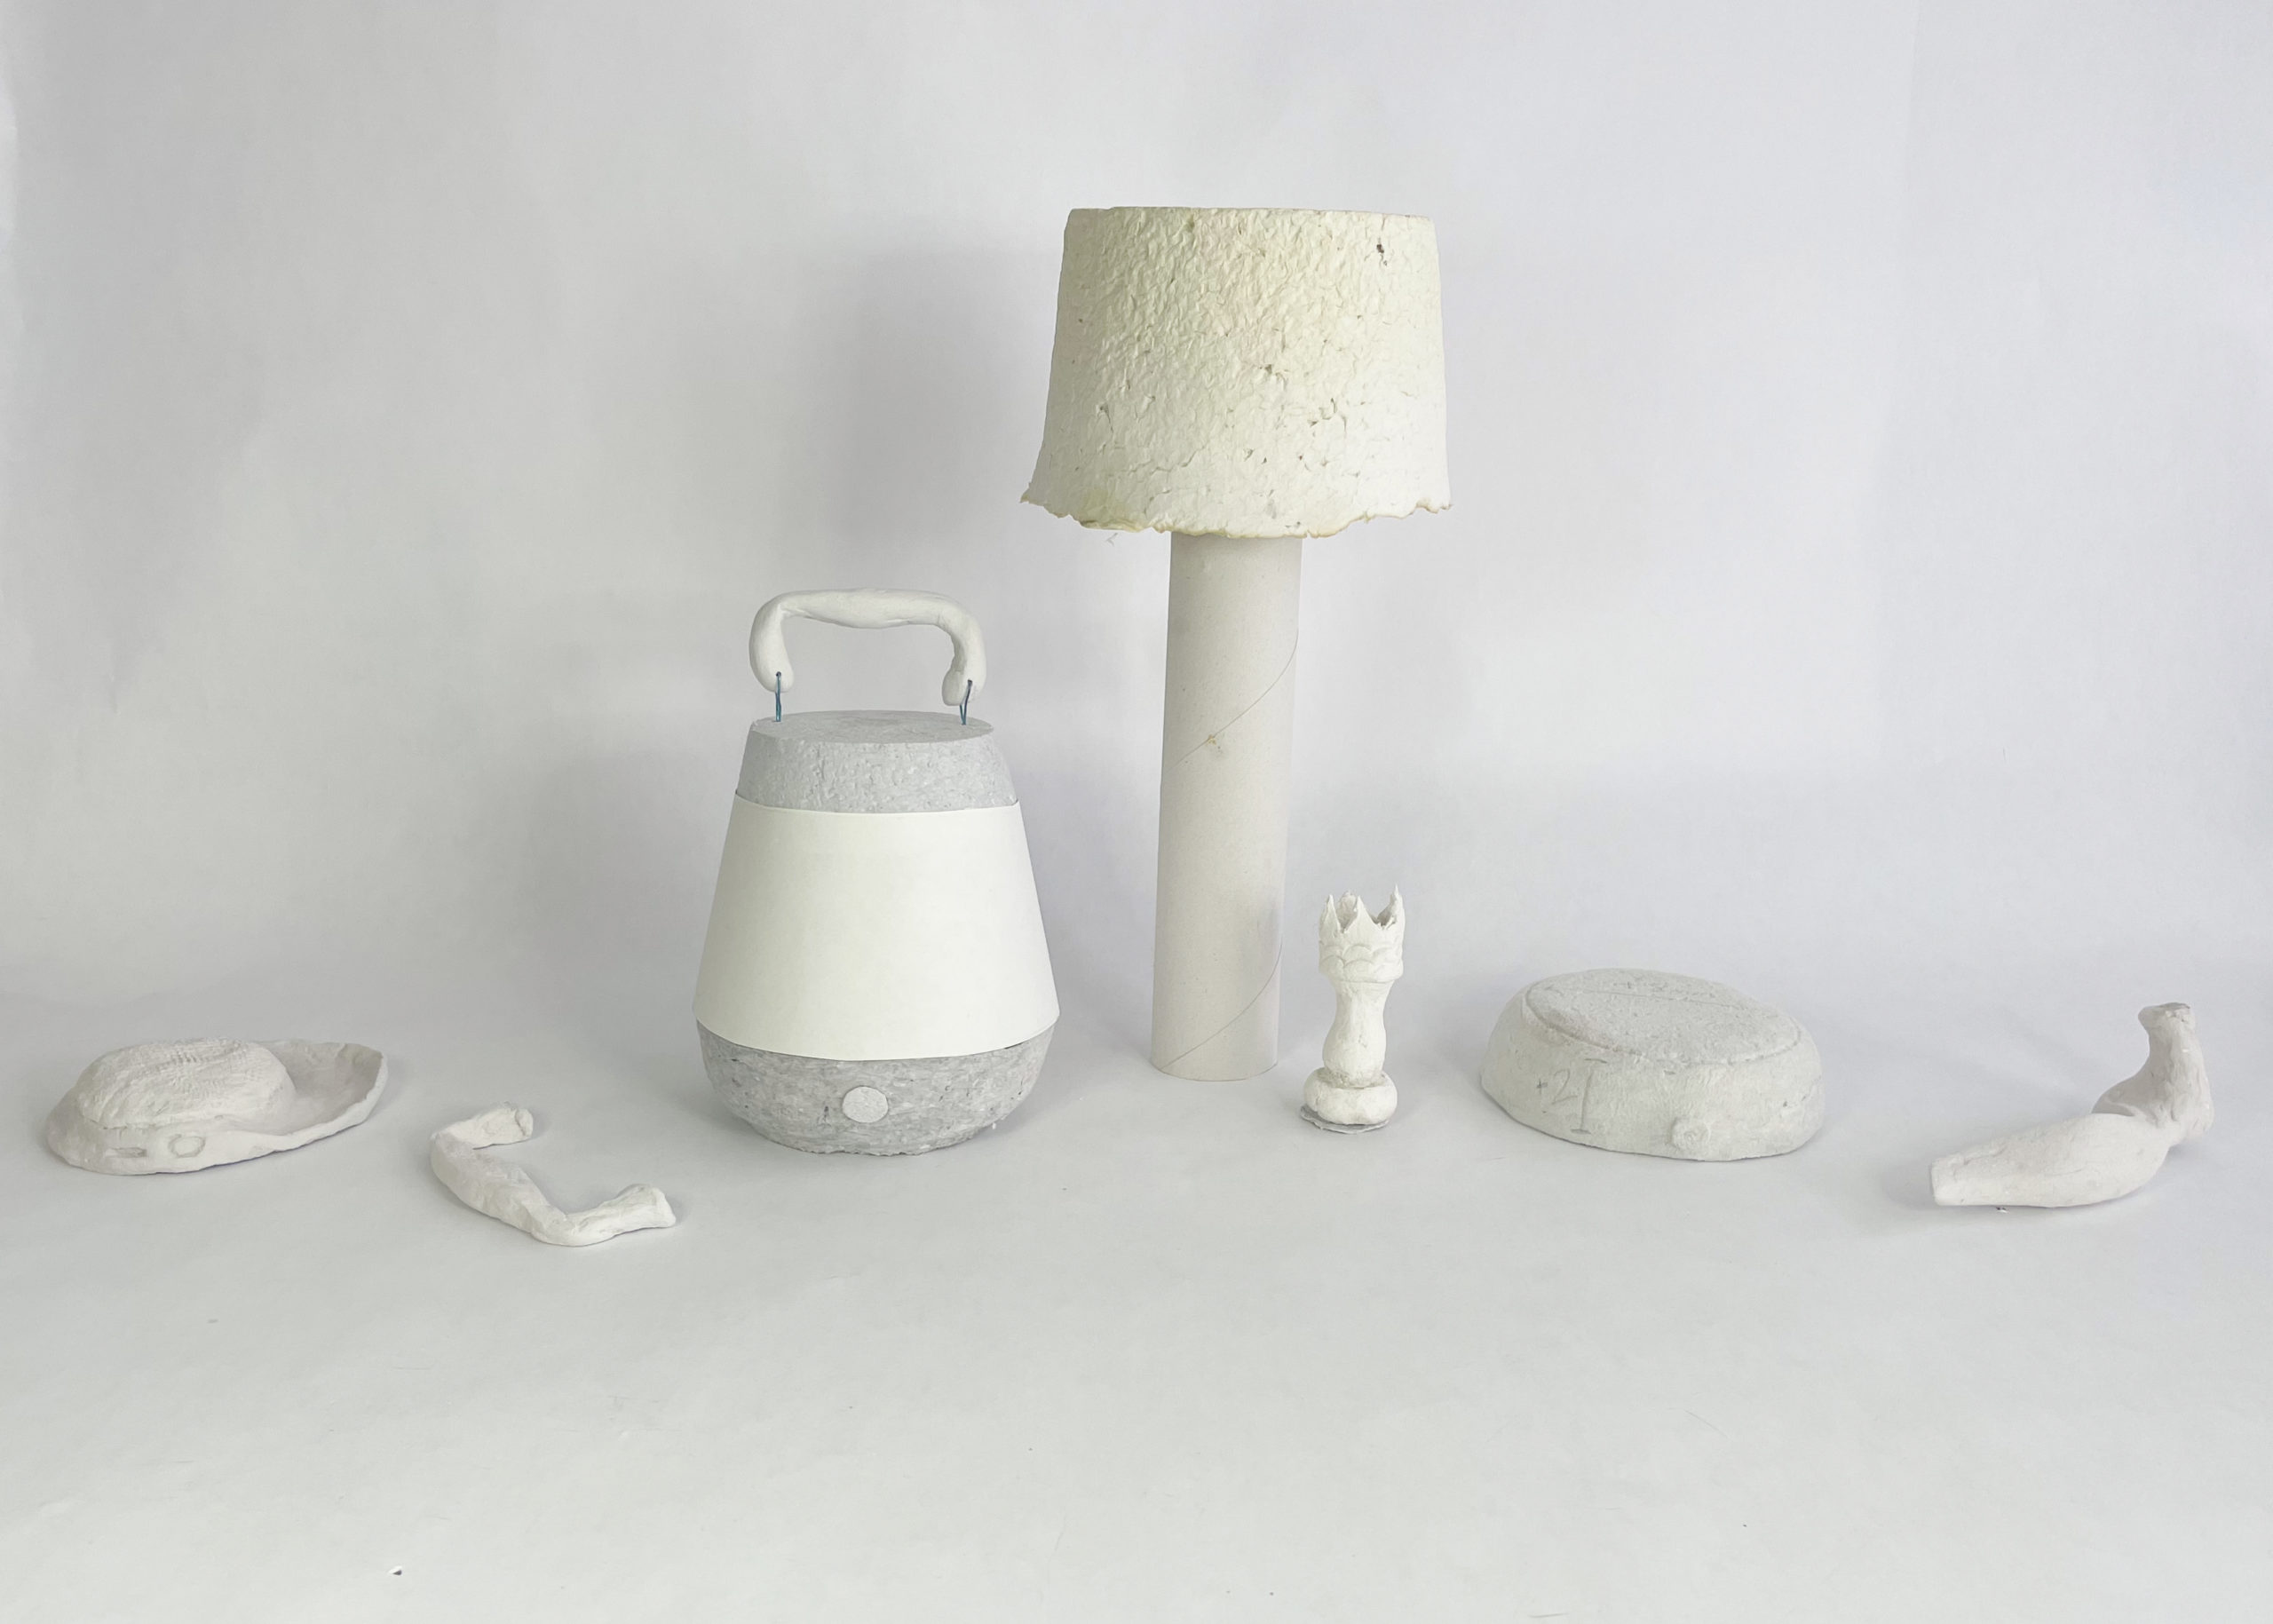 white models on a white background, from left to right: speaker, drawer pull, speaker, lamp, chess piece, speaker, door handle